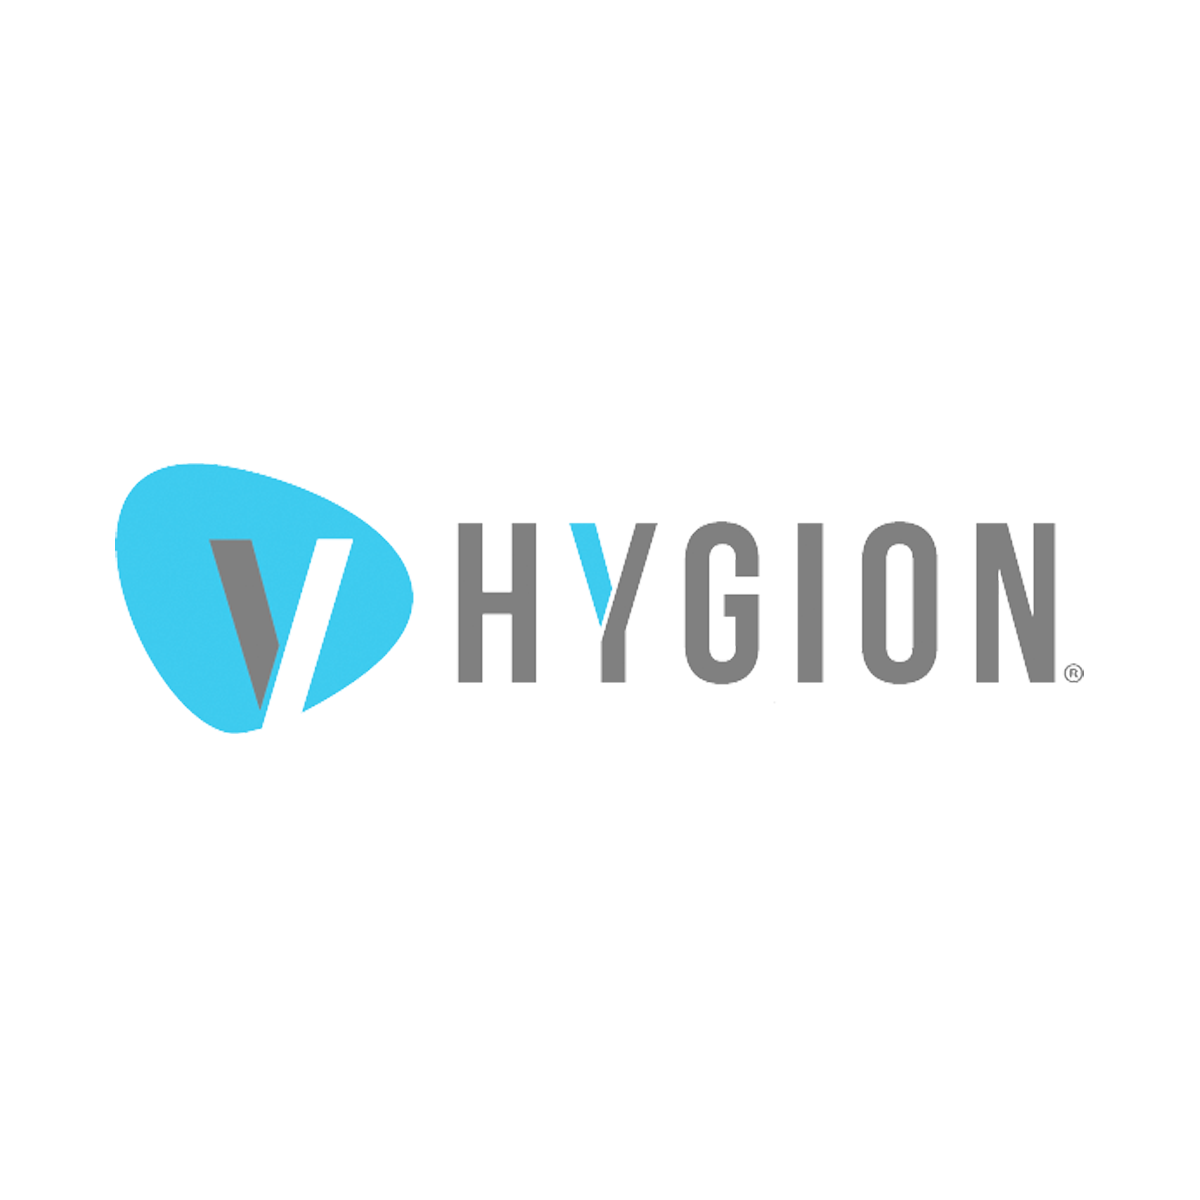 (c) Hygion.com.br